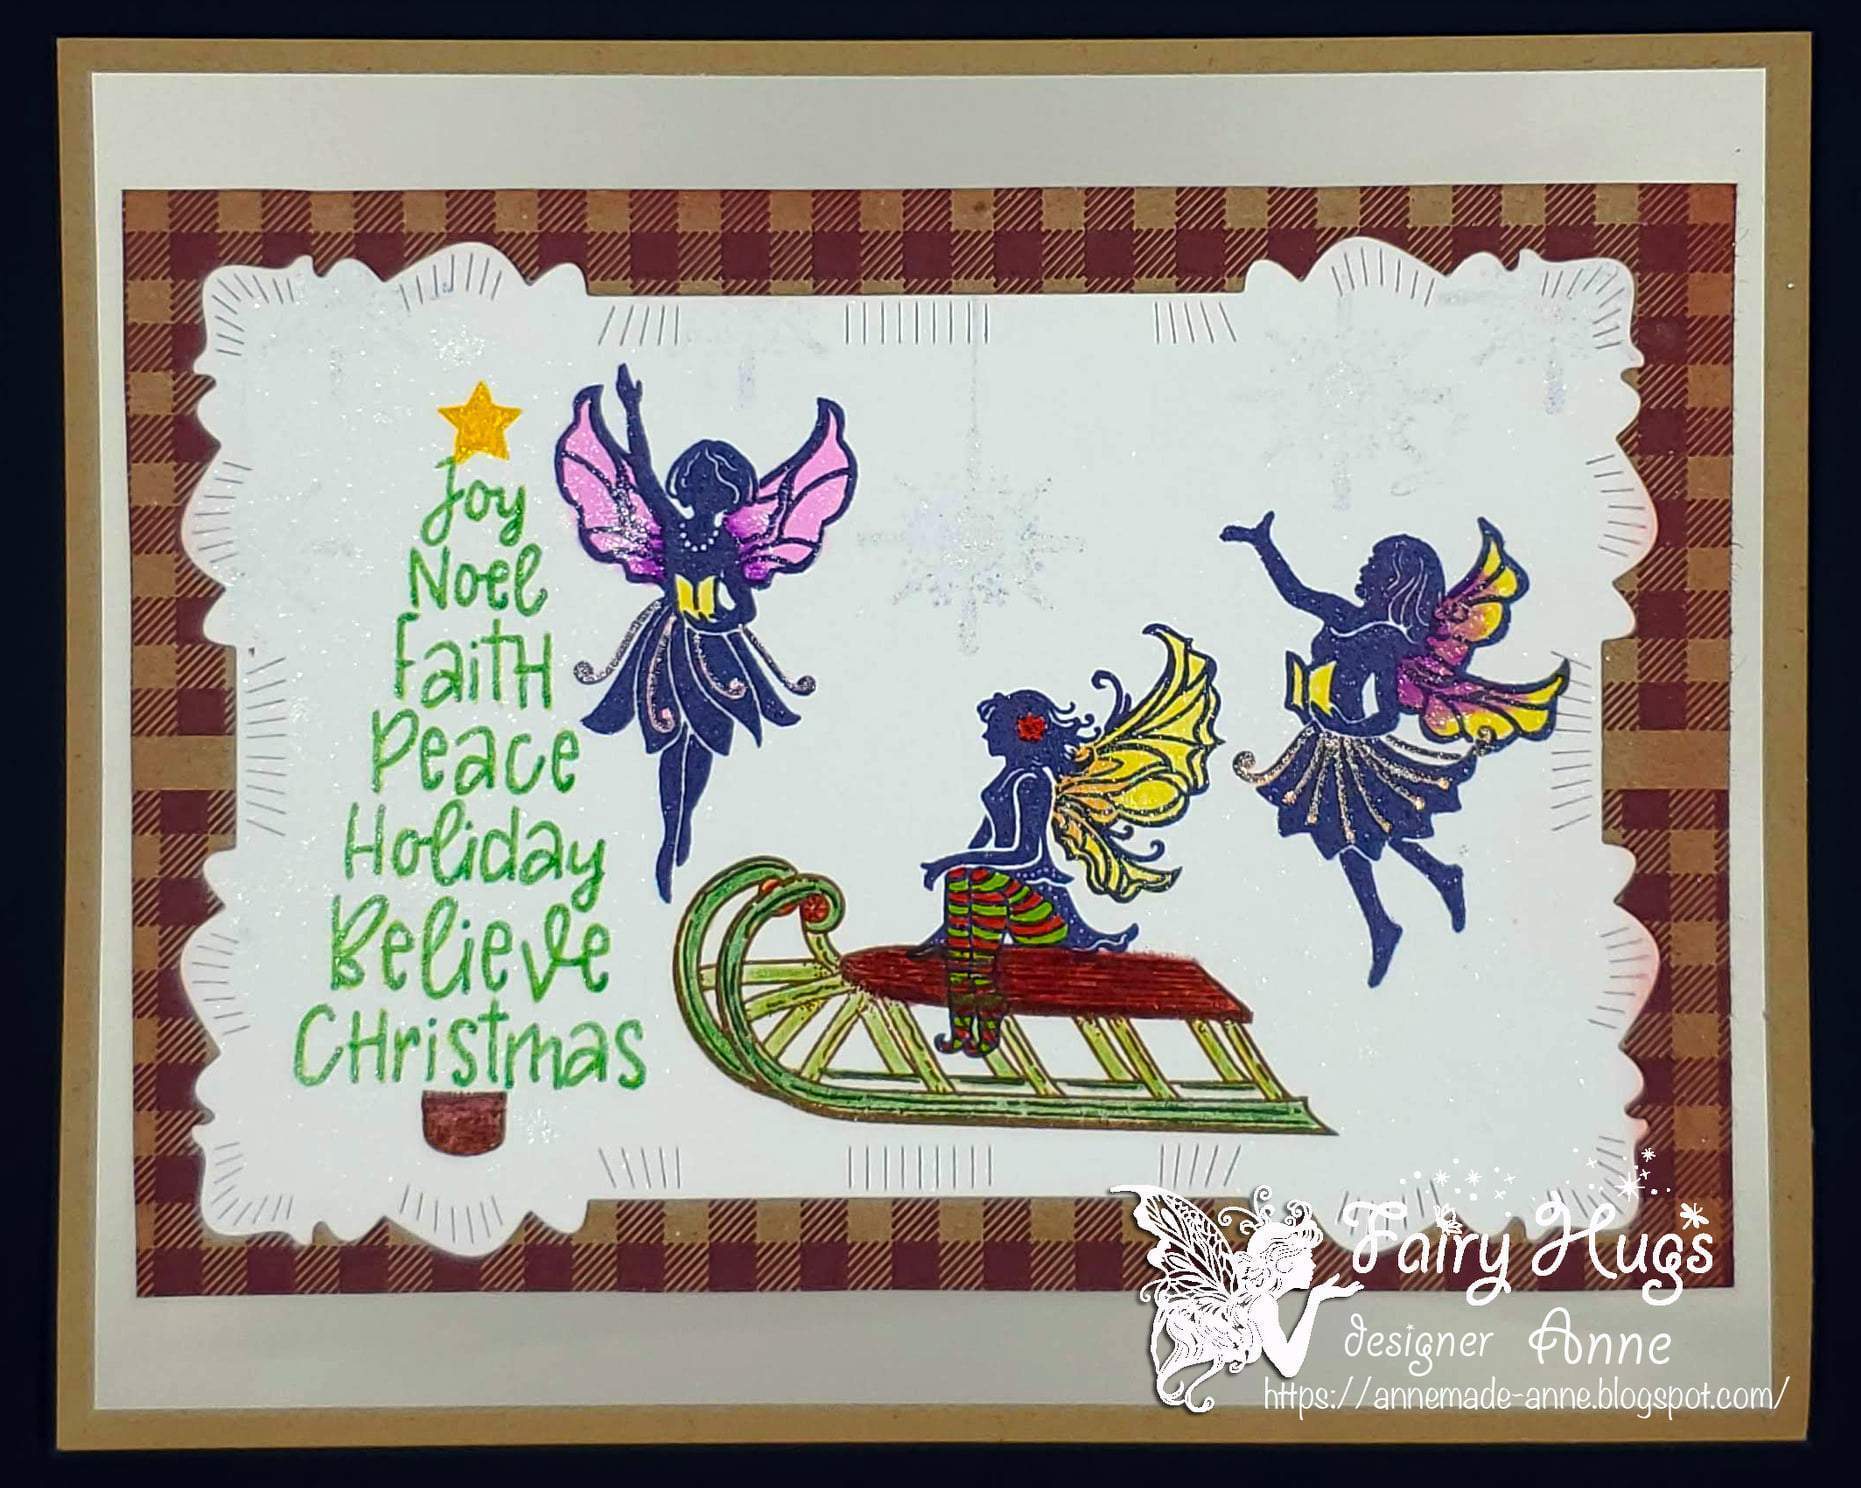 Fairy Hugs Stamps - Viola